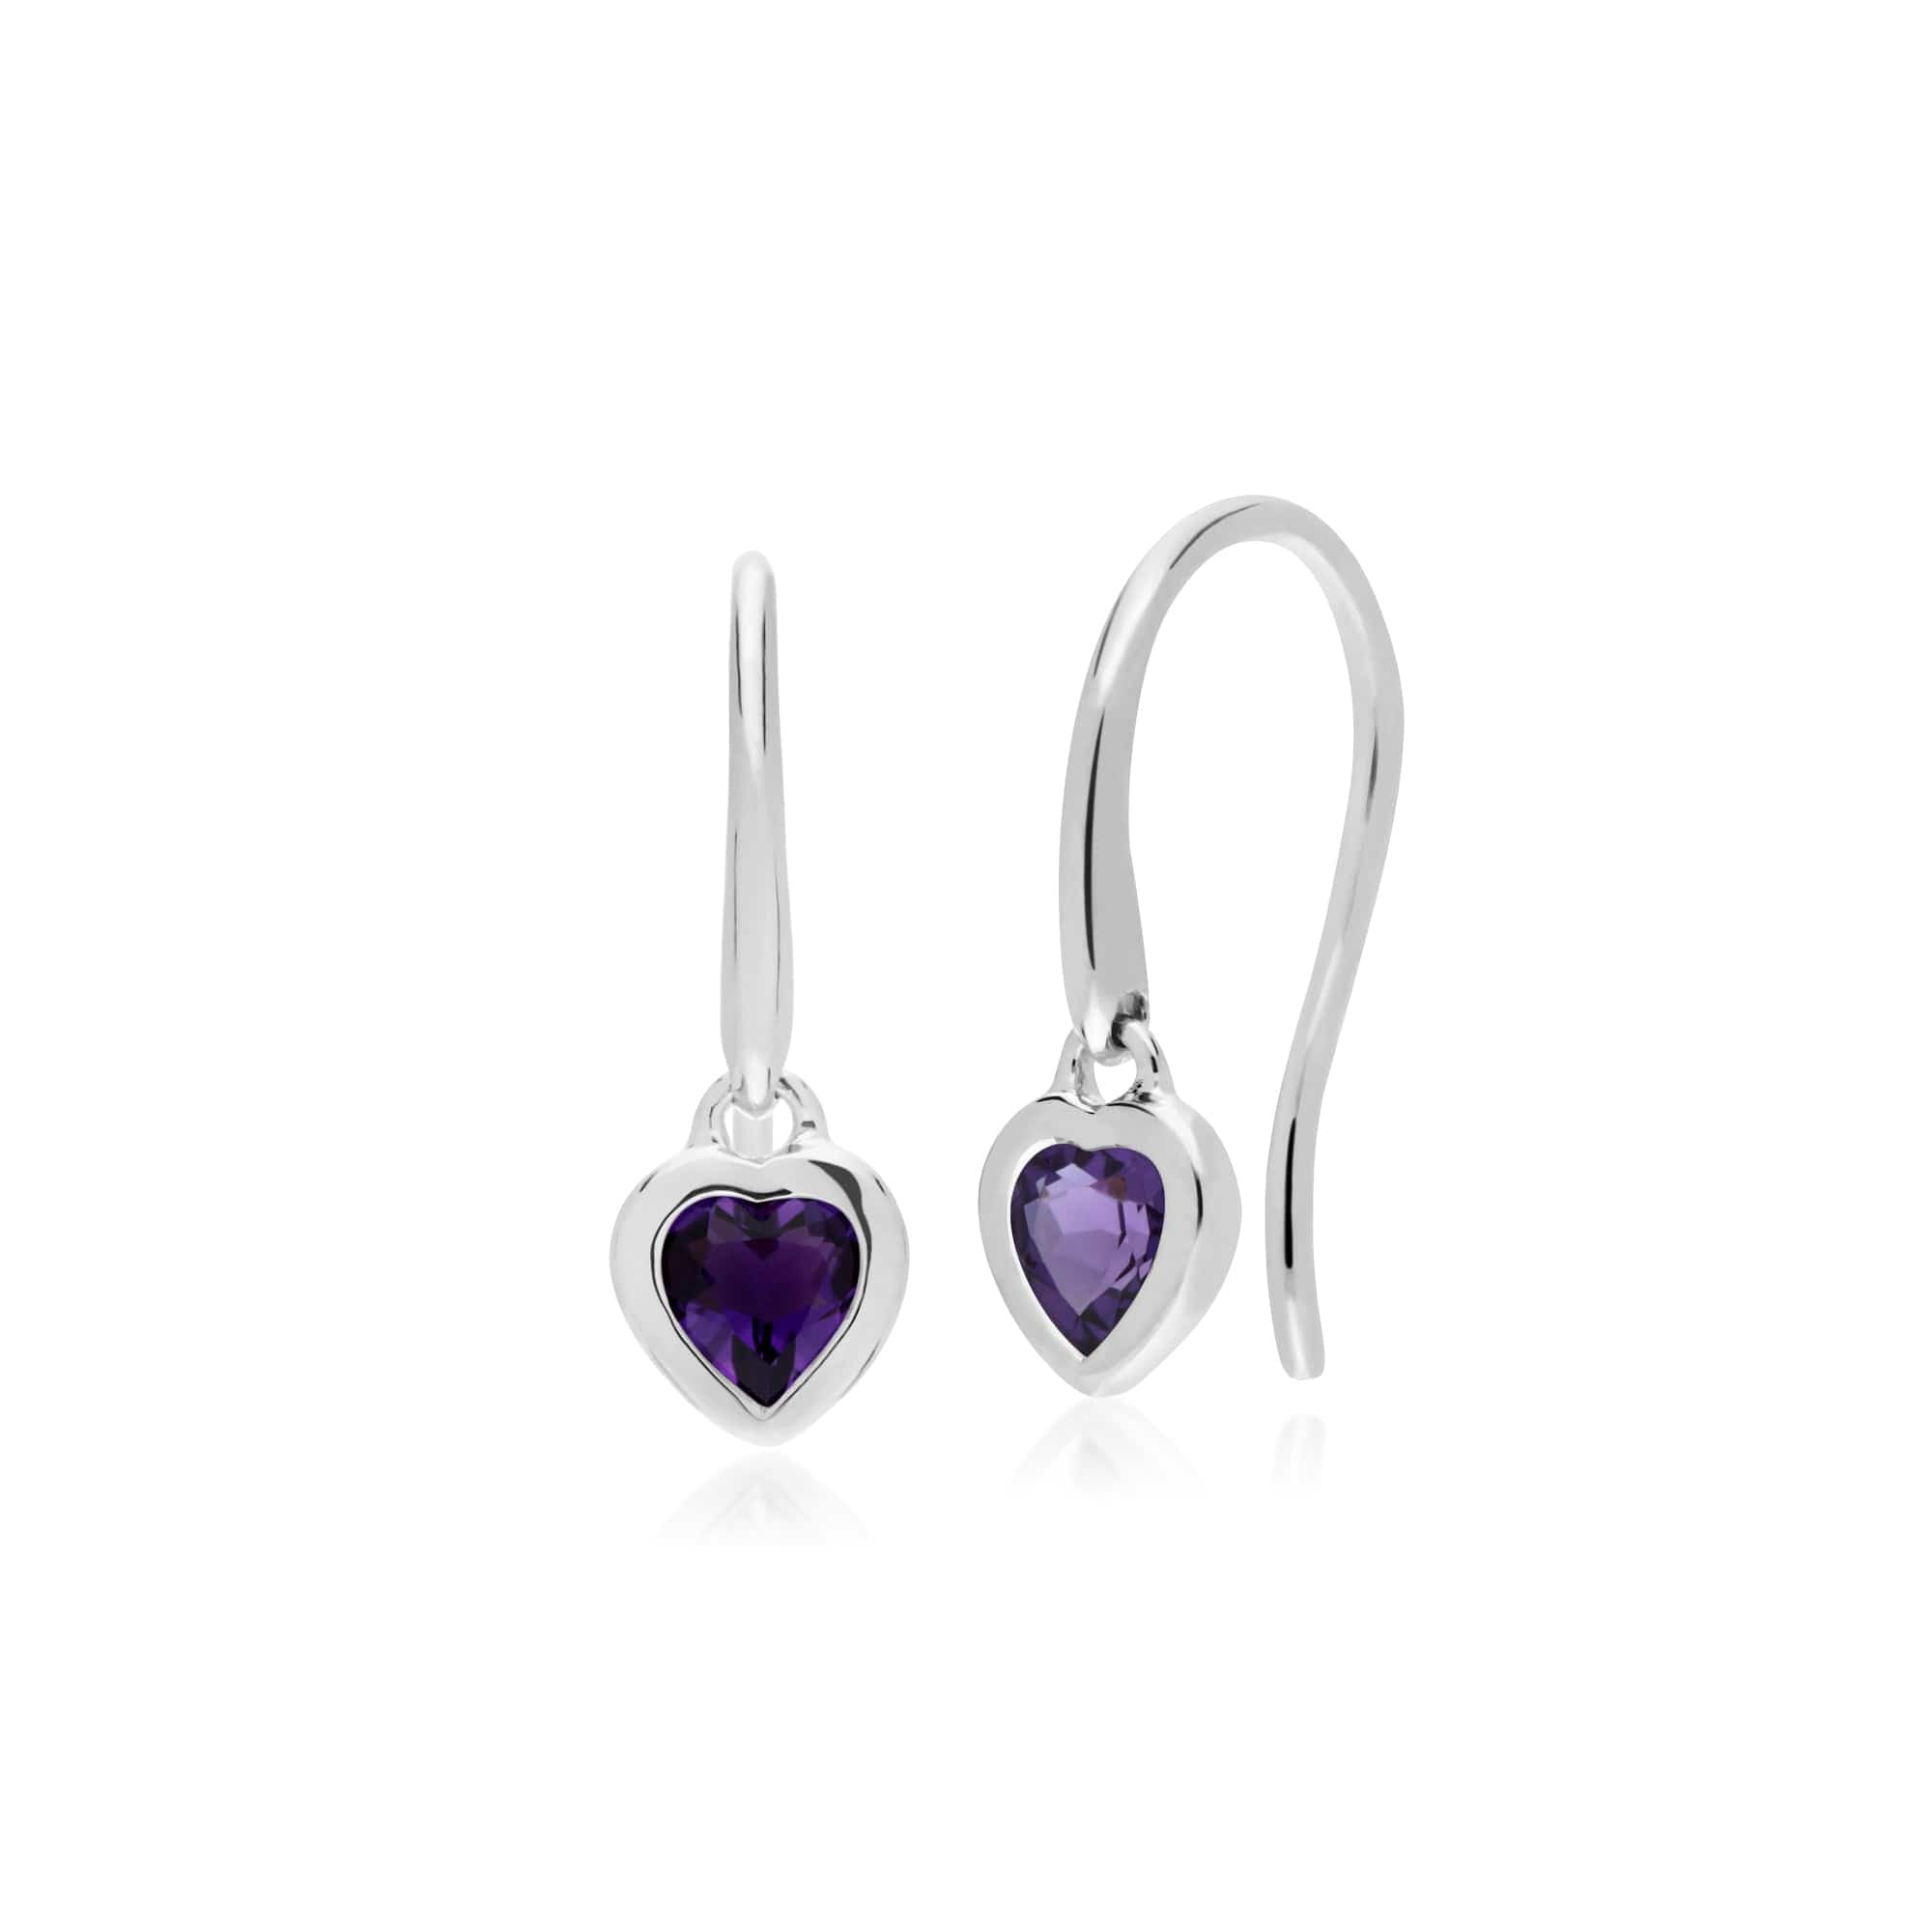 270E026201925-270P028701925 Classic Heart Amethyst Drop Earrings & Pendant Set in 925 Sterling Silver 2